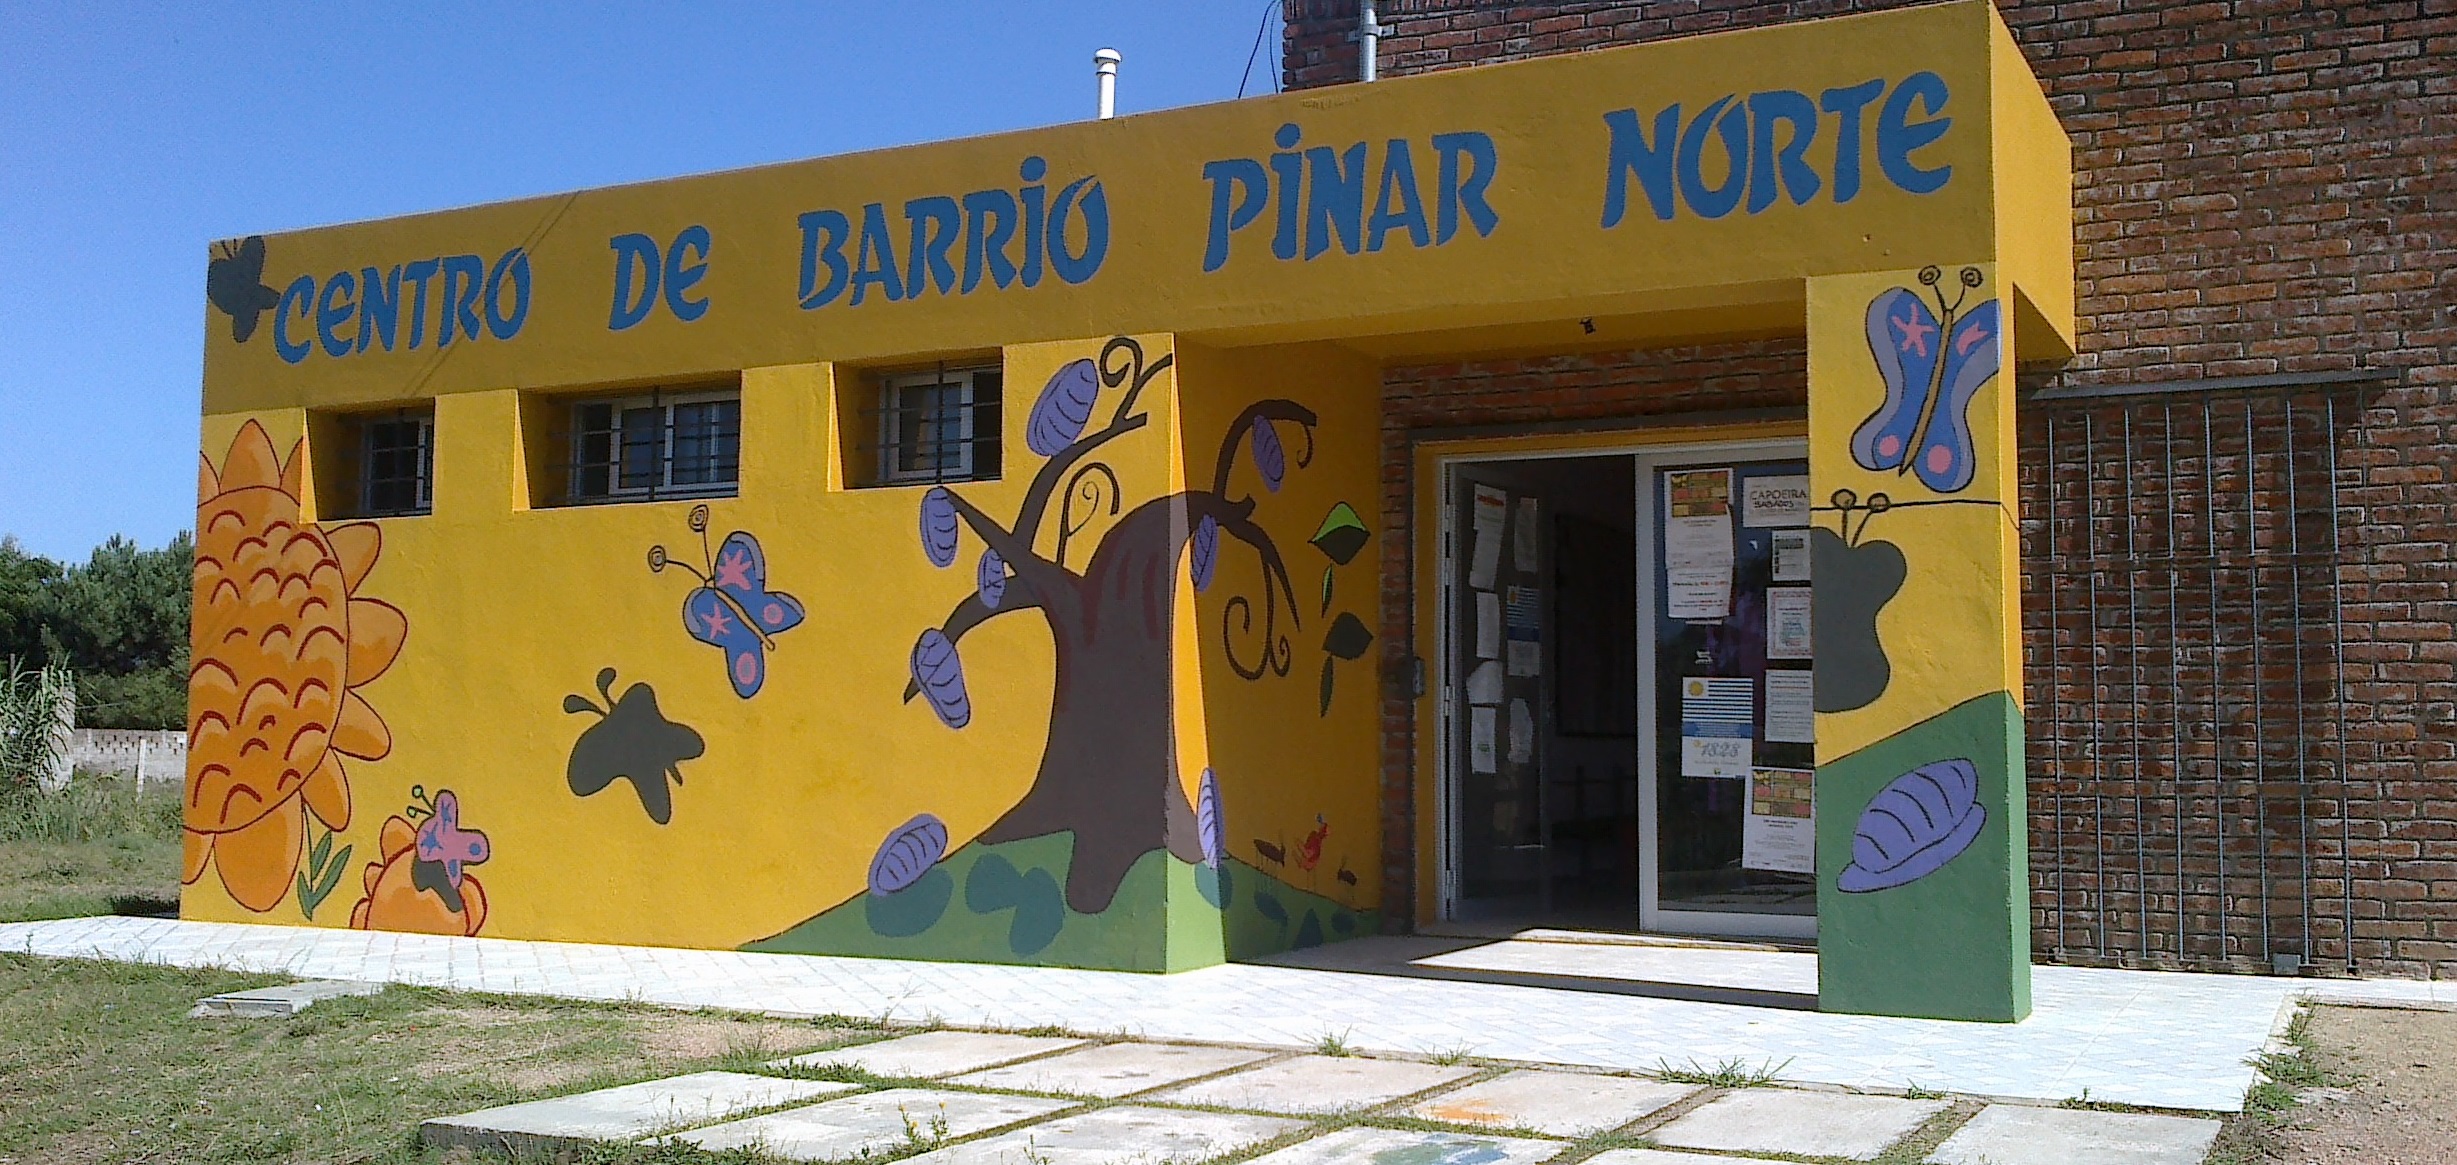 Centro de Barrio Pinar Norte 